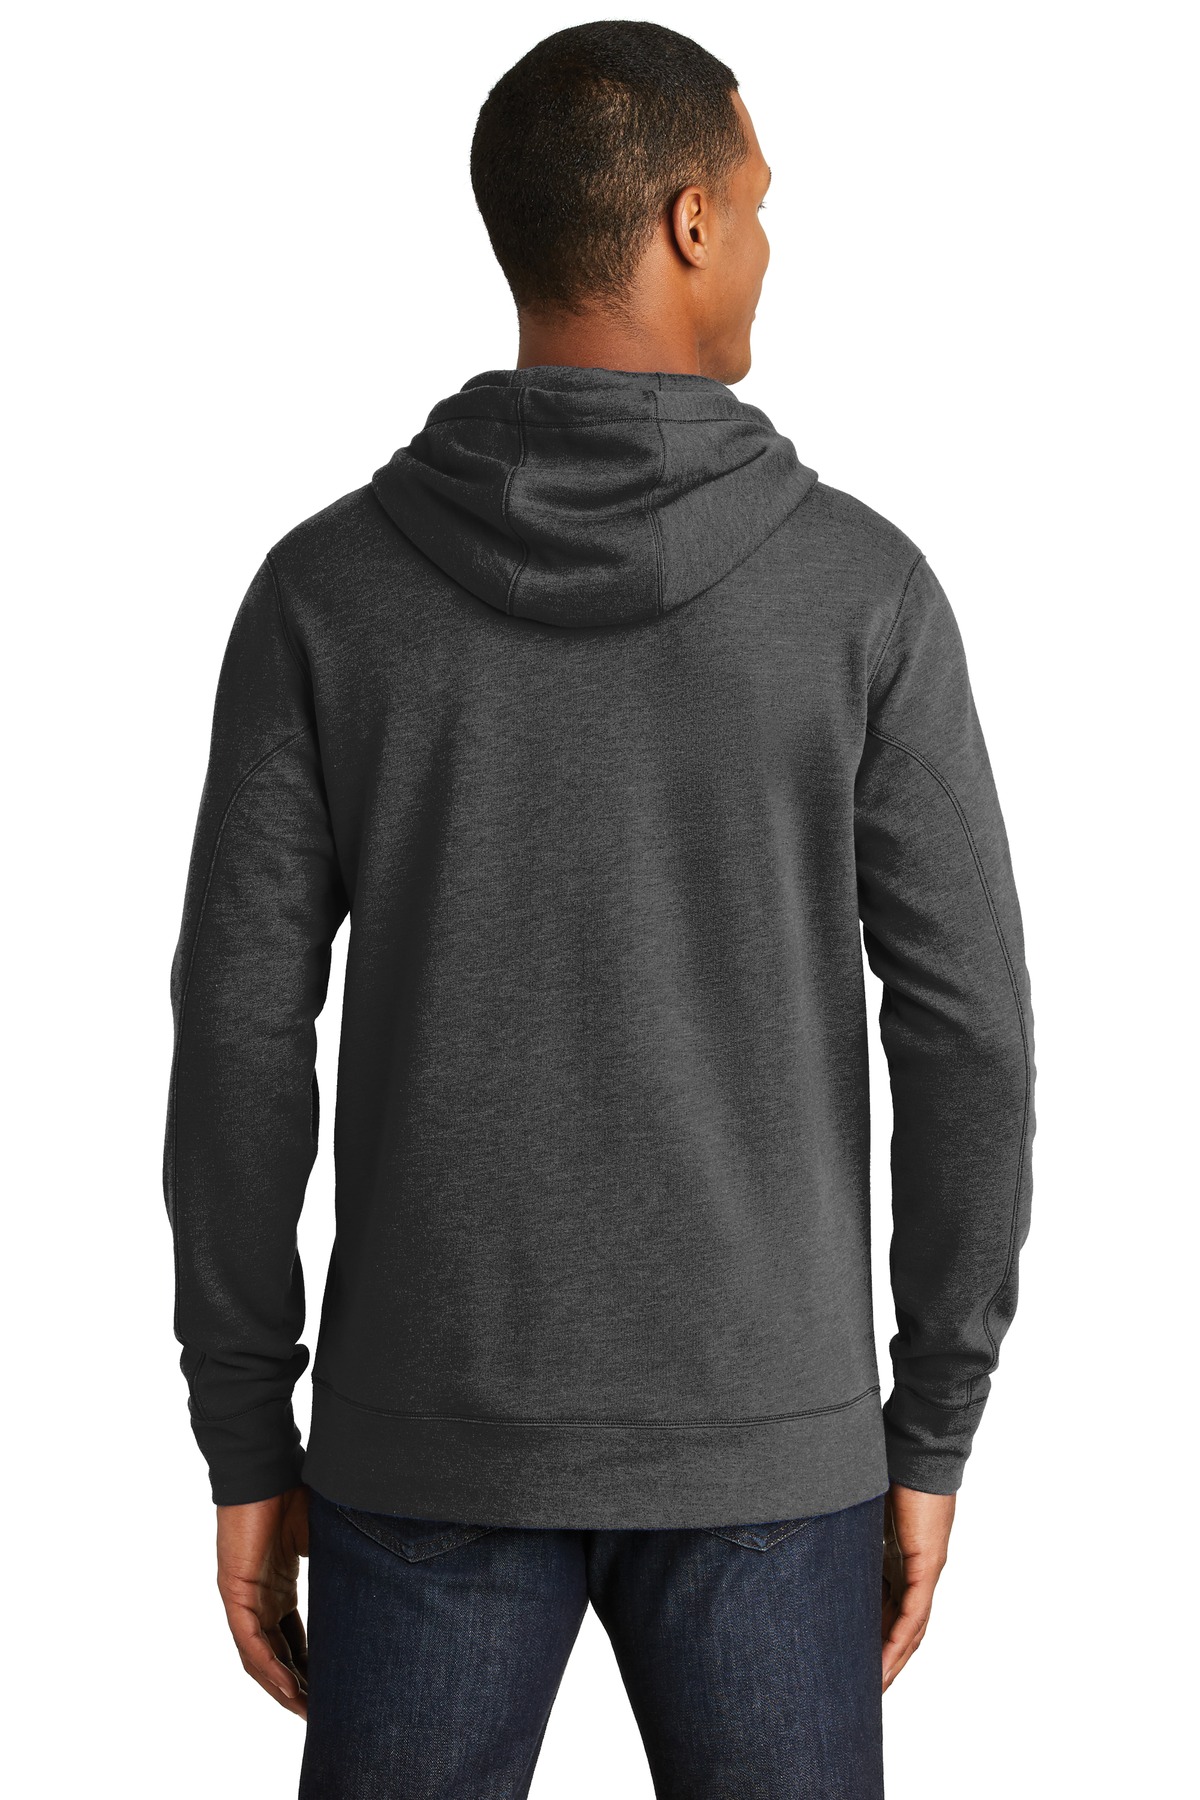 New Era ® Tri-Blend Fleece Pullover Hoodie. NEA510 - Custom Shirt Shop